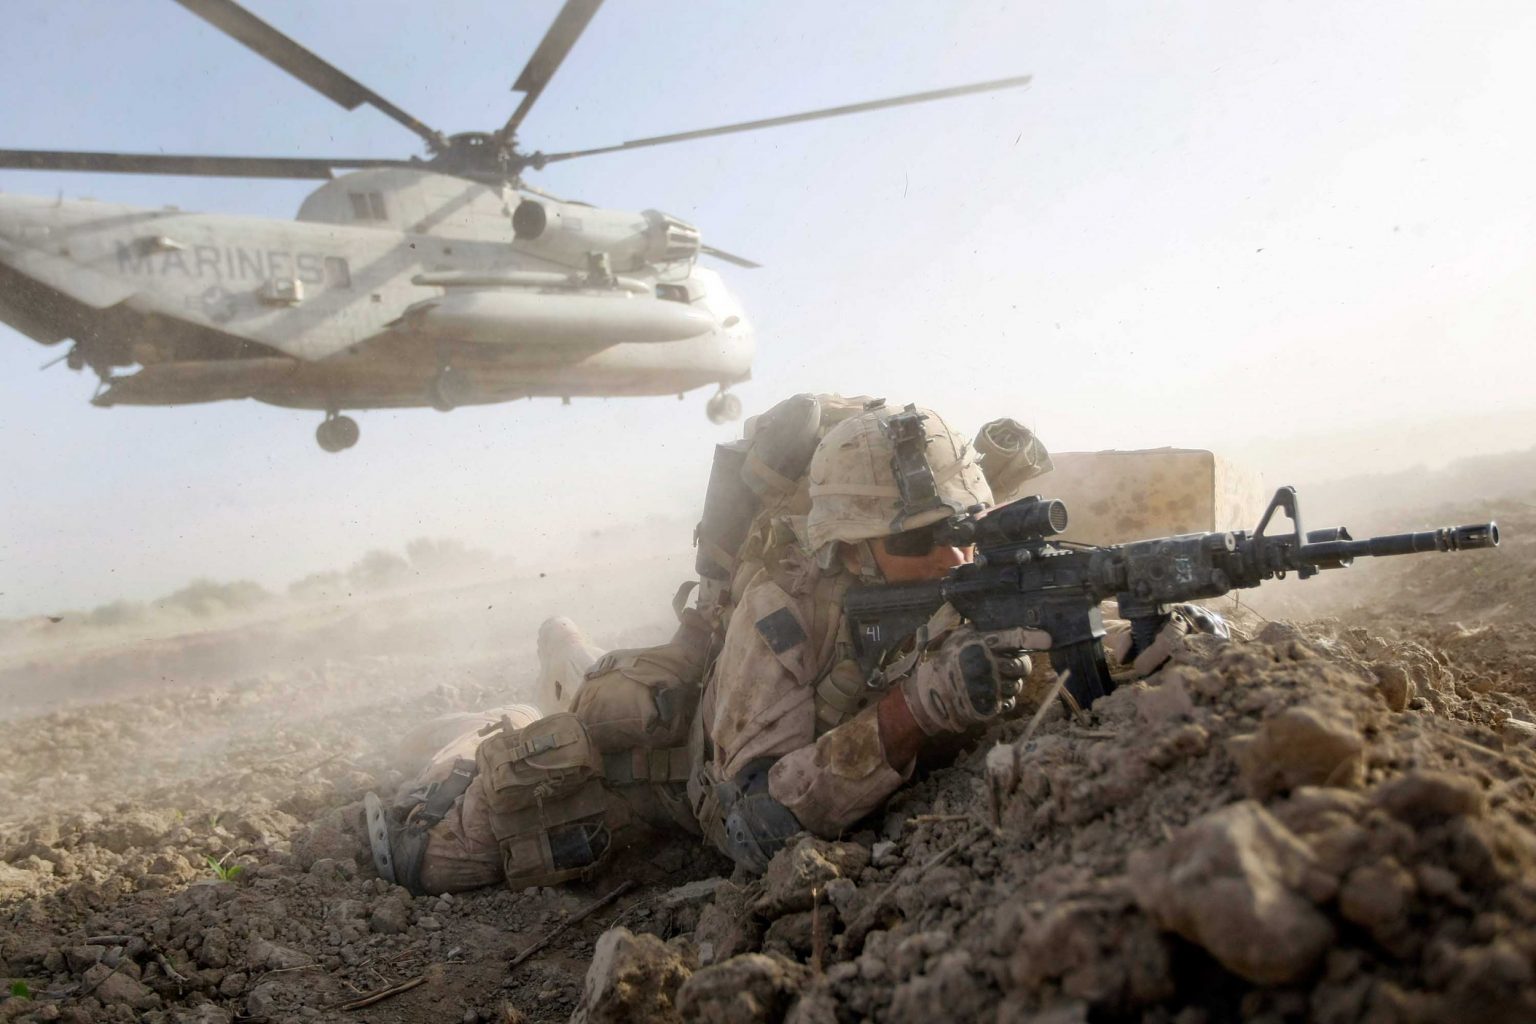 «Թալիբանը» գրավել է Պենտագոնի ինքնաթիռներ և հրթիռներ.ԱՄՆ-ն սպասում է տարհանման ավարտին, որպեսզի որոշում կայացնի ,ընդհւպ պահեստների ռմբակոծում